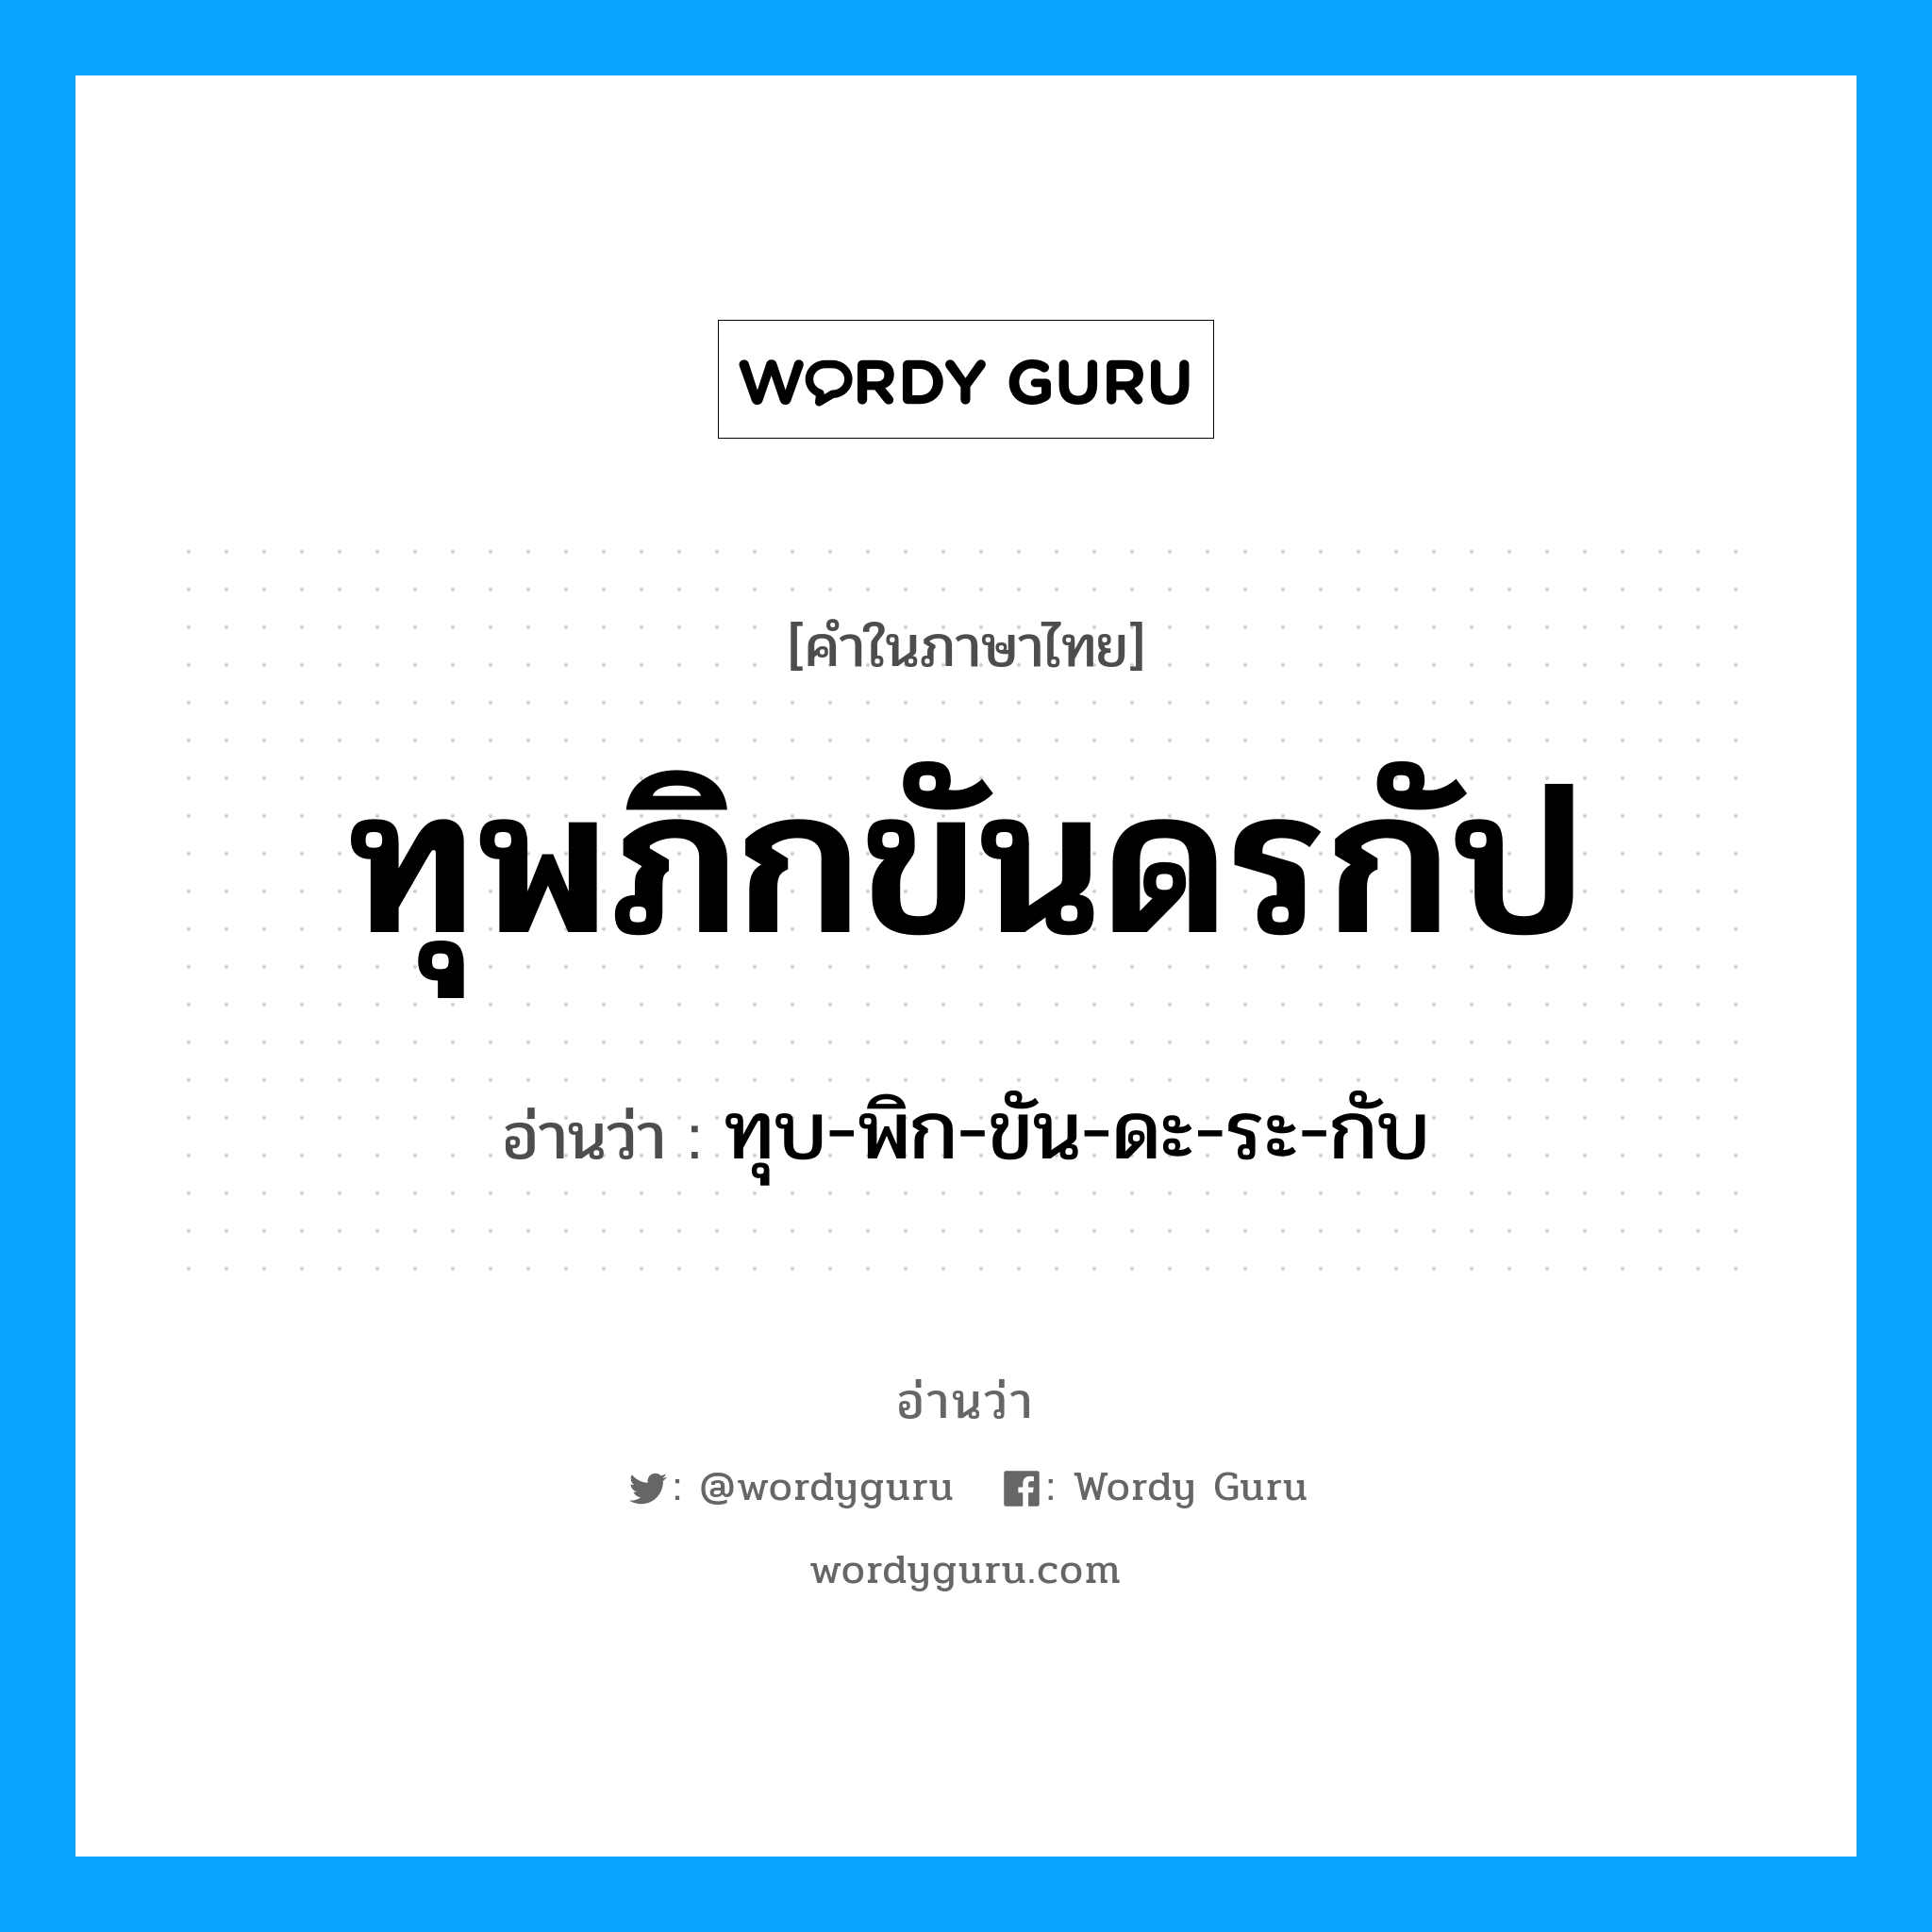 ทุบ-พิก-ขัน-ดะ-ระ-กับ เป็นคำอ่านของคำไหน?, คำในภาษาไทย ทุบ-พิก-ขัน-ดะ-ระ-กับ อ่านว่า ทุพภิกขันดรกัป